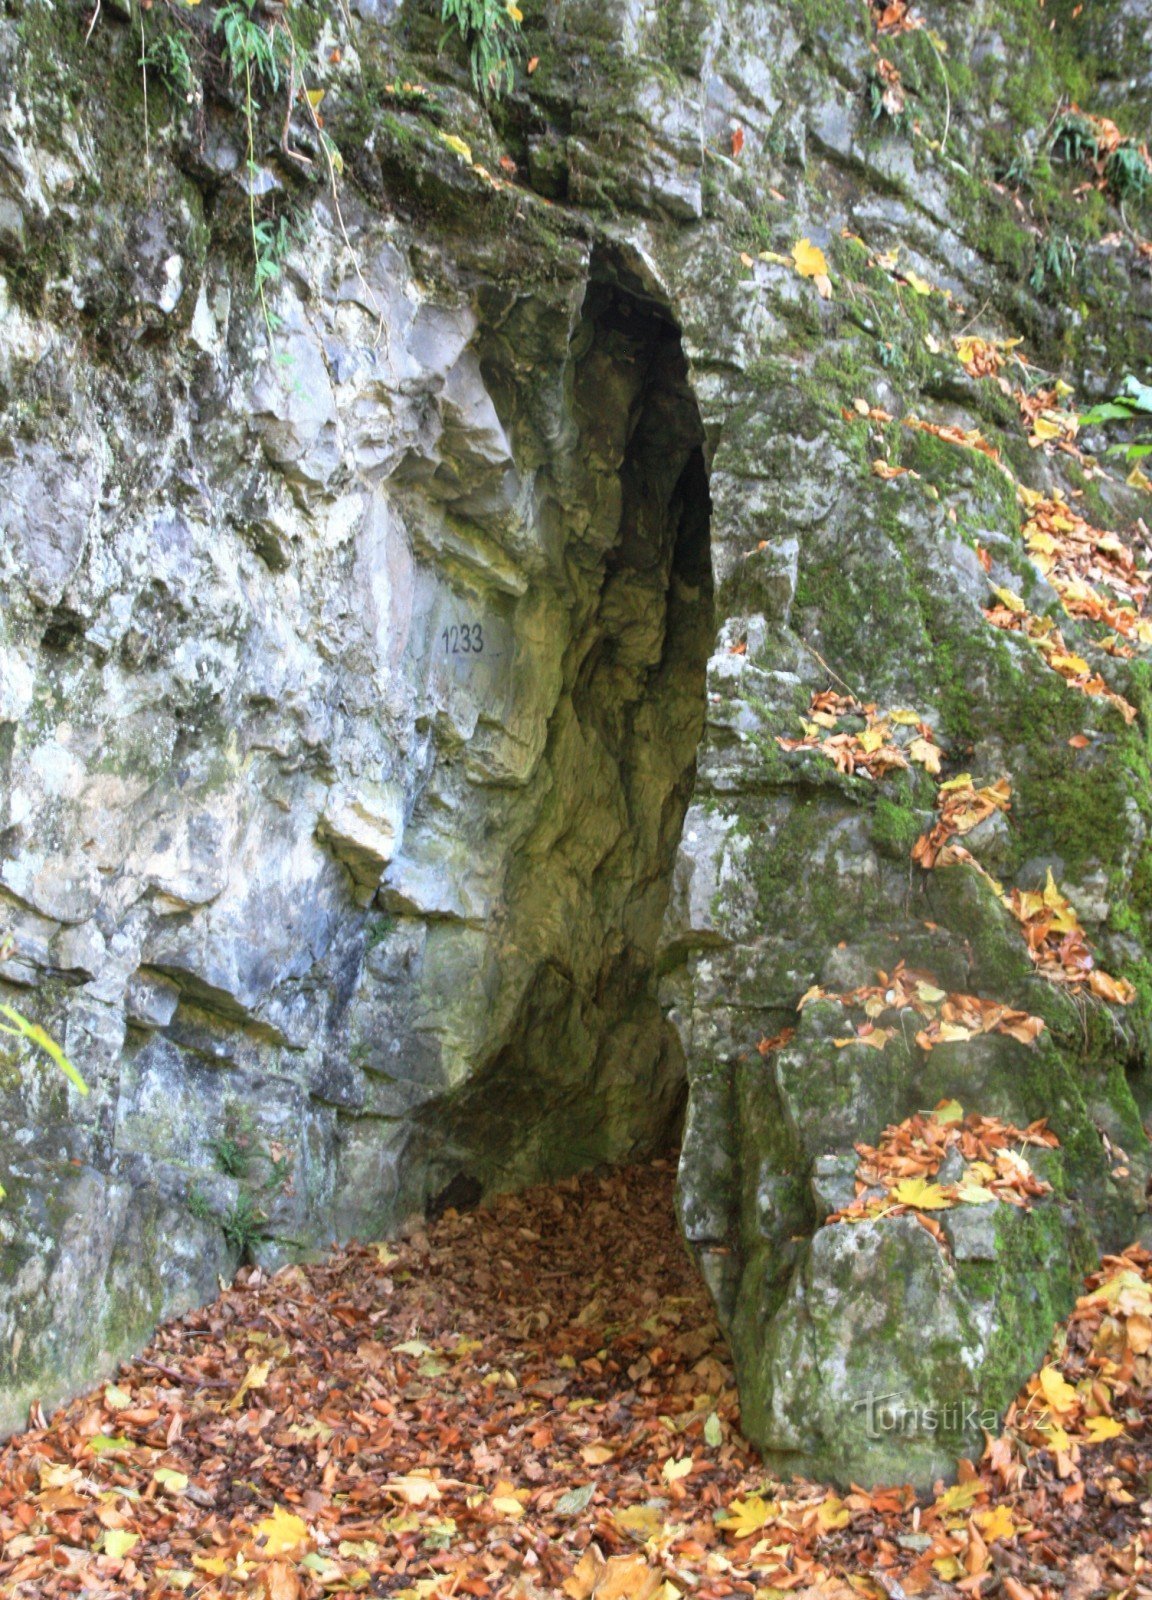 Josefovské údolí の Švýcárna の上にある他の洞窟の XNUMX つ